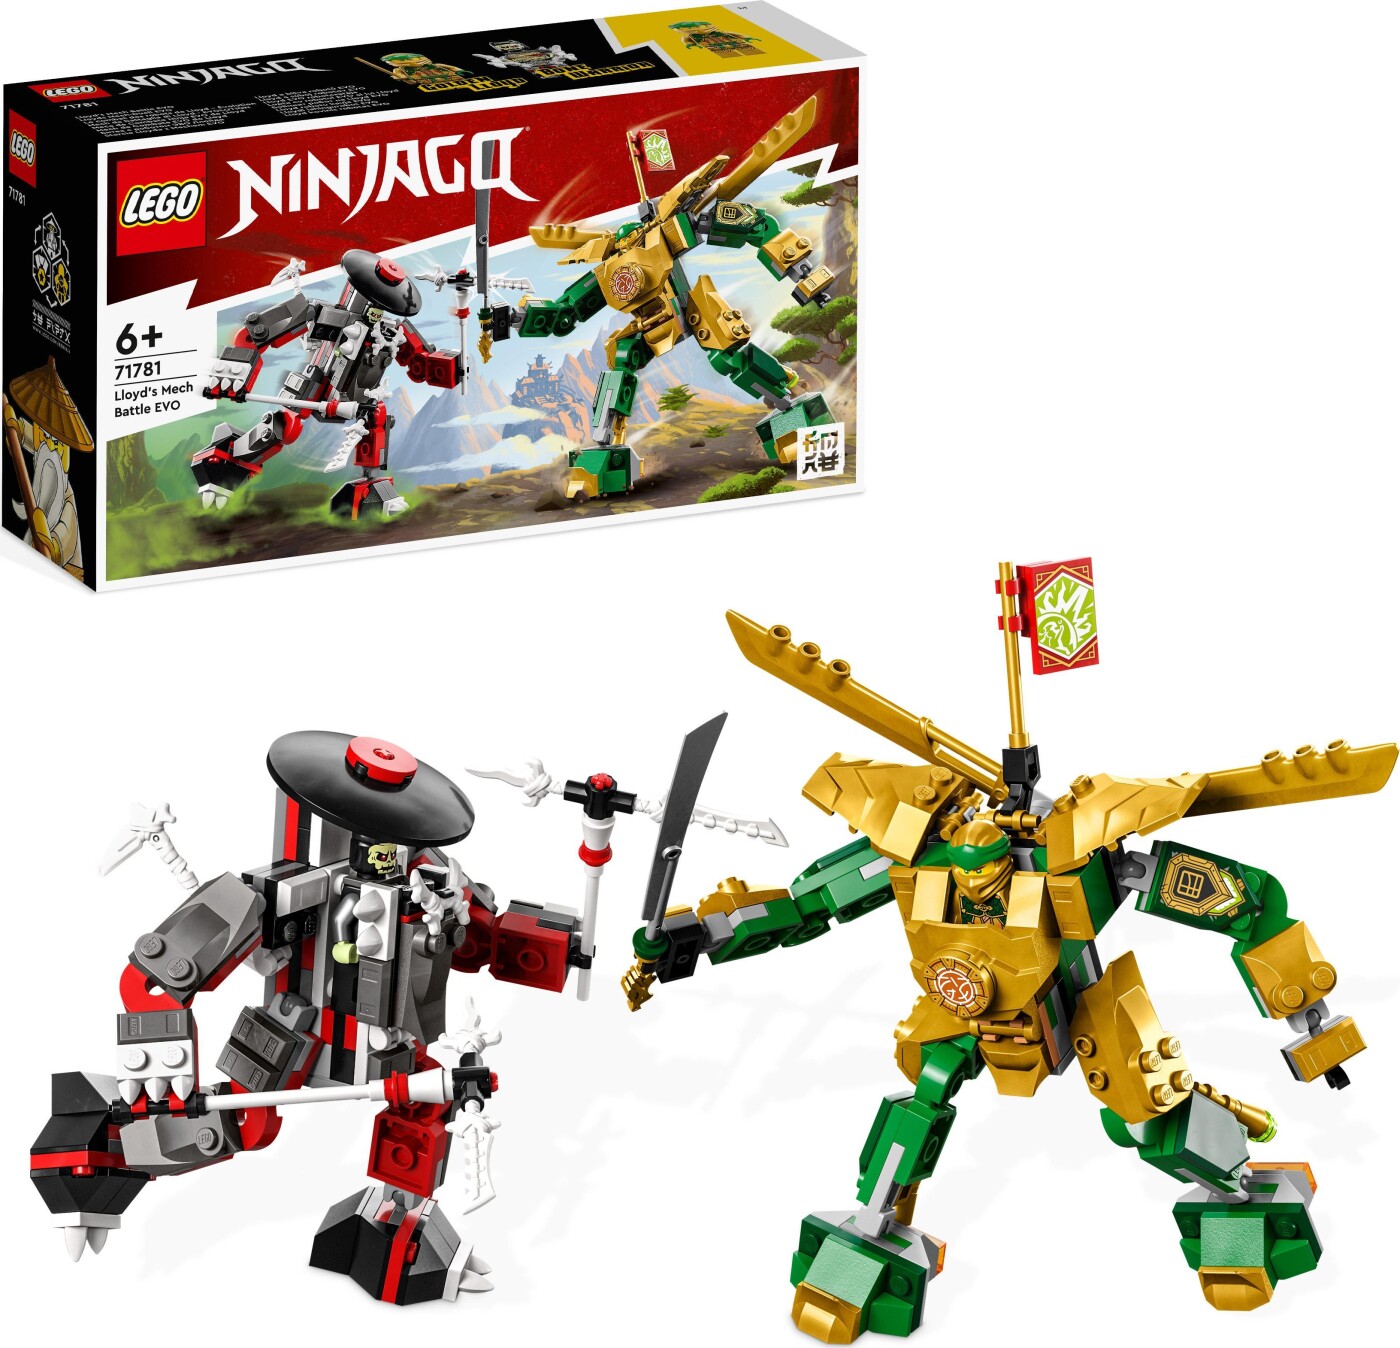 Lego Ninjago - Lloyds Robotkamp Evo - 71781 | tilbud og køb på Gucca.dk